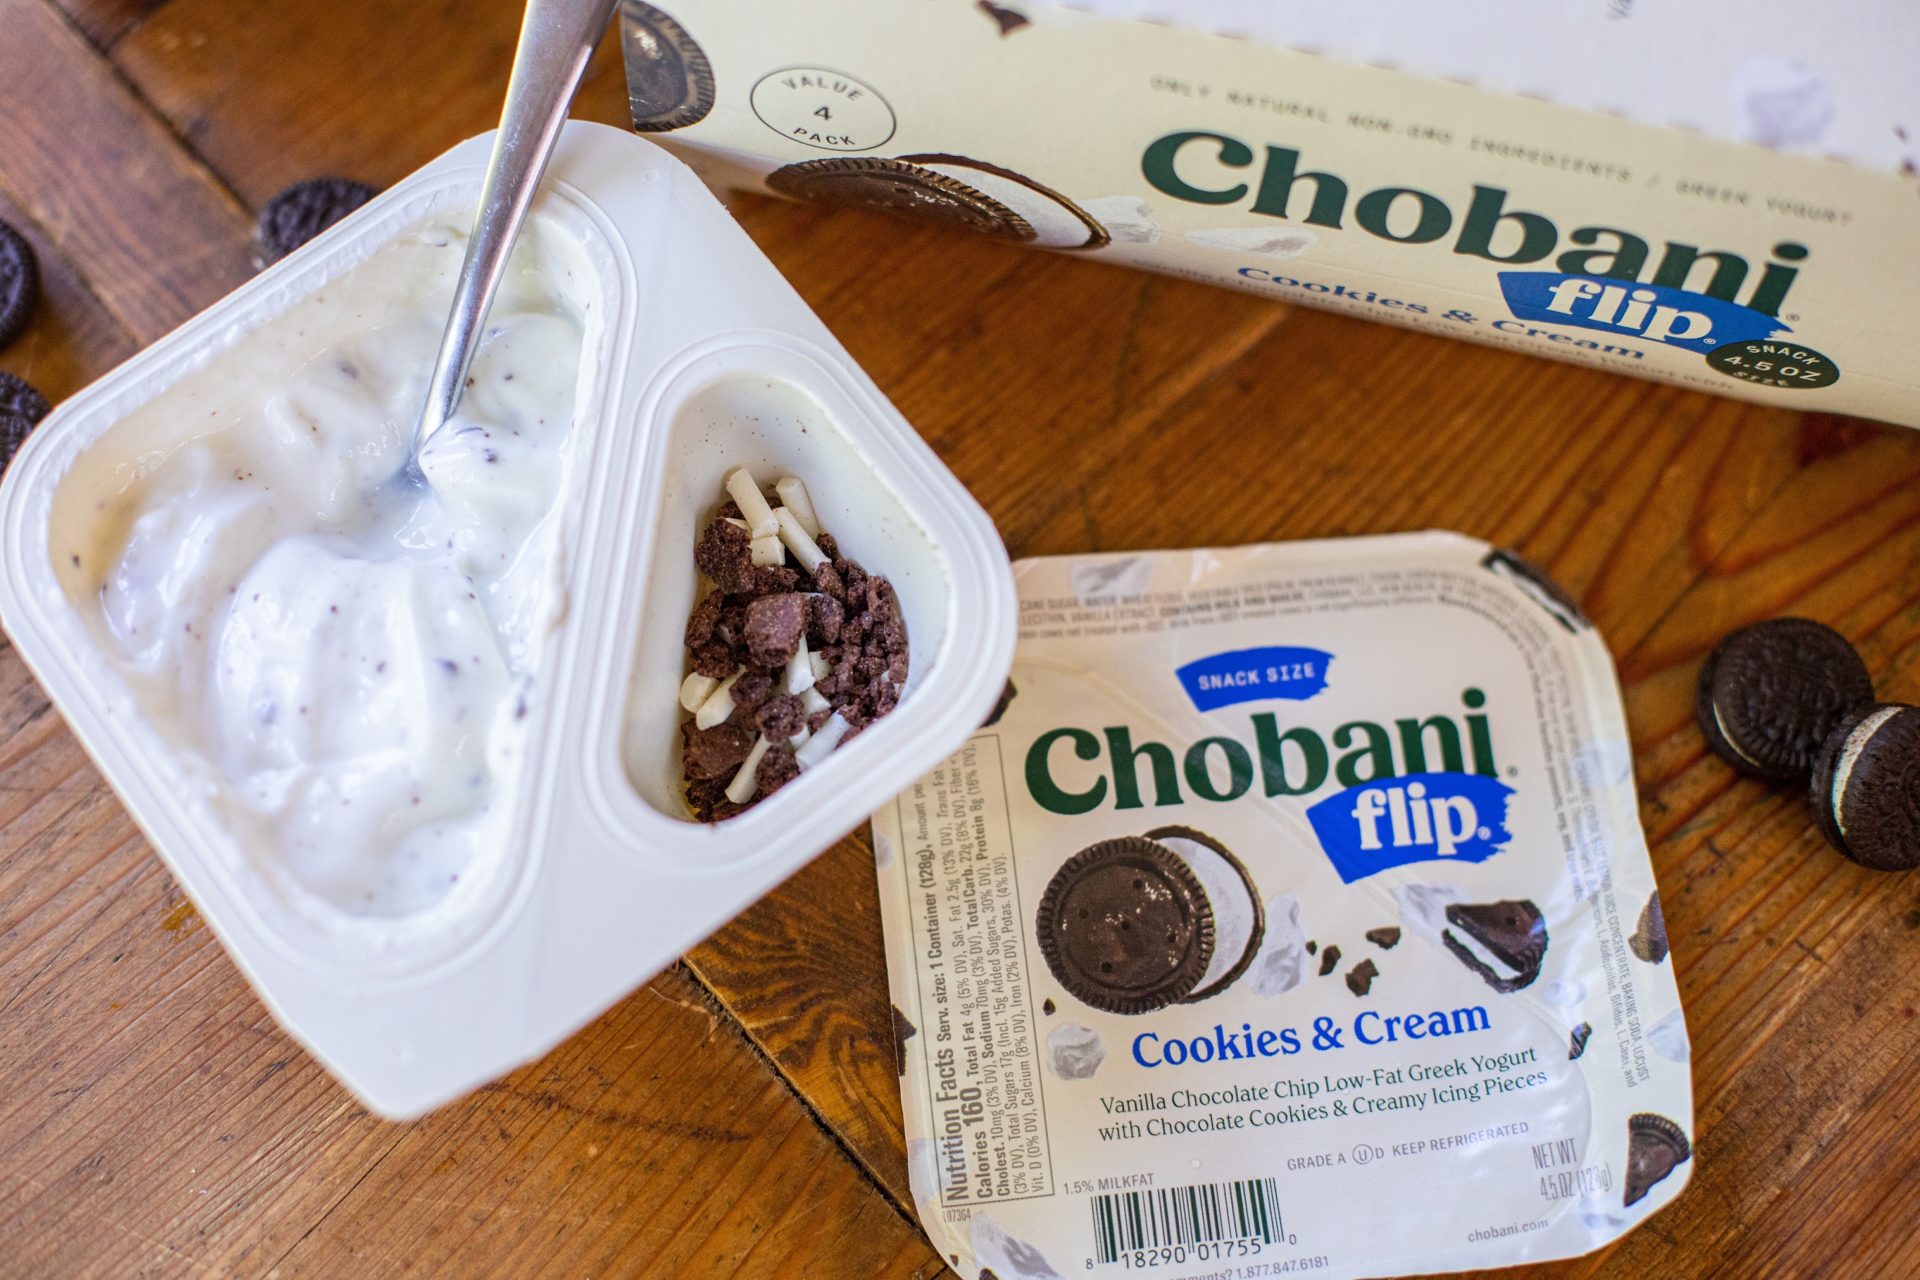 Chobani Flip Yogurt As Low As 69¢ At Kroger